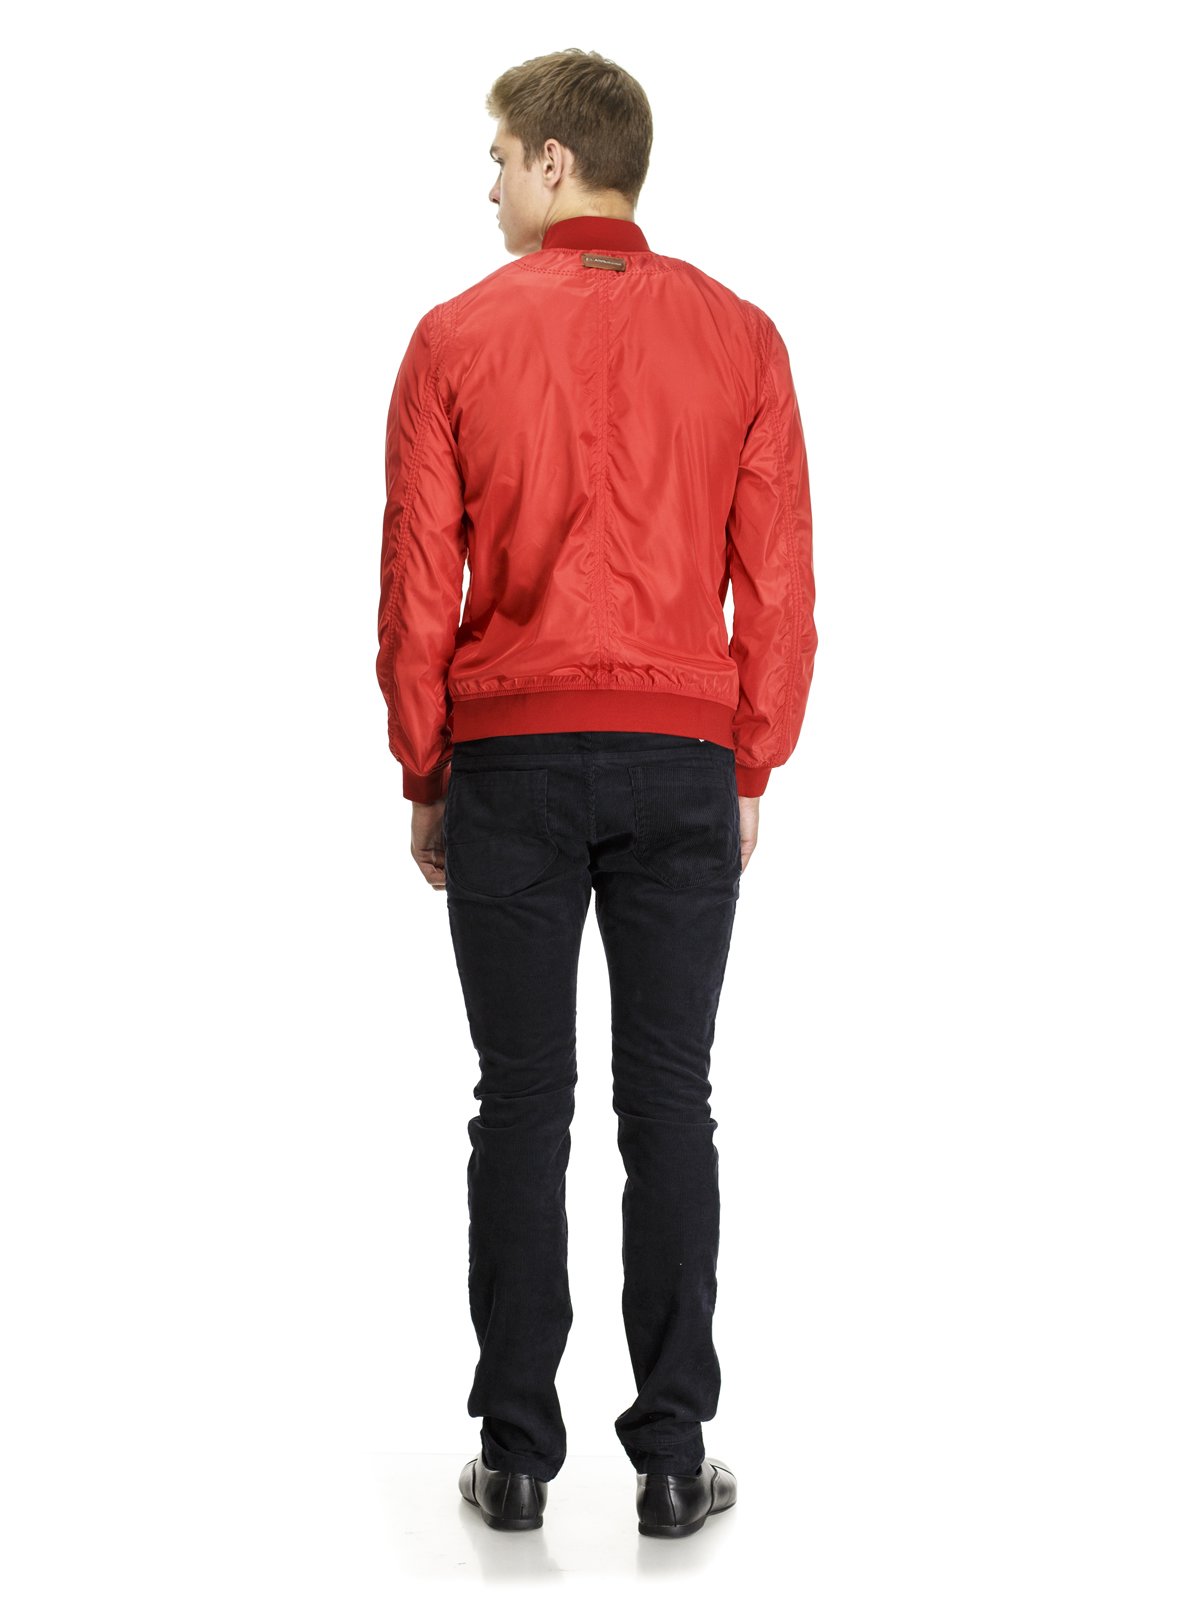 Куртка красная — Class Roberto Cavalli, акция действует до 14 мая 2019 года LeBoutique — Коллекция брендовых вещей от Class Roberto Cavalli —